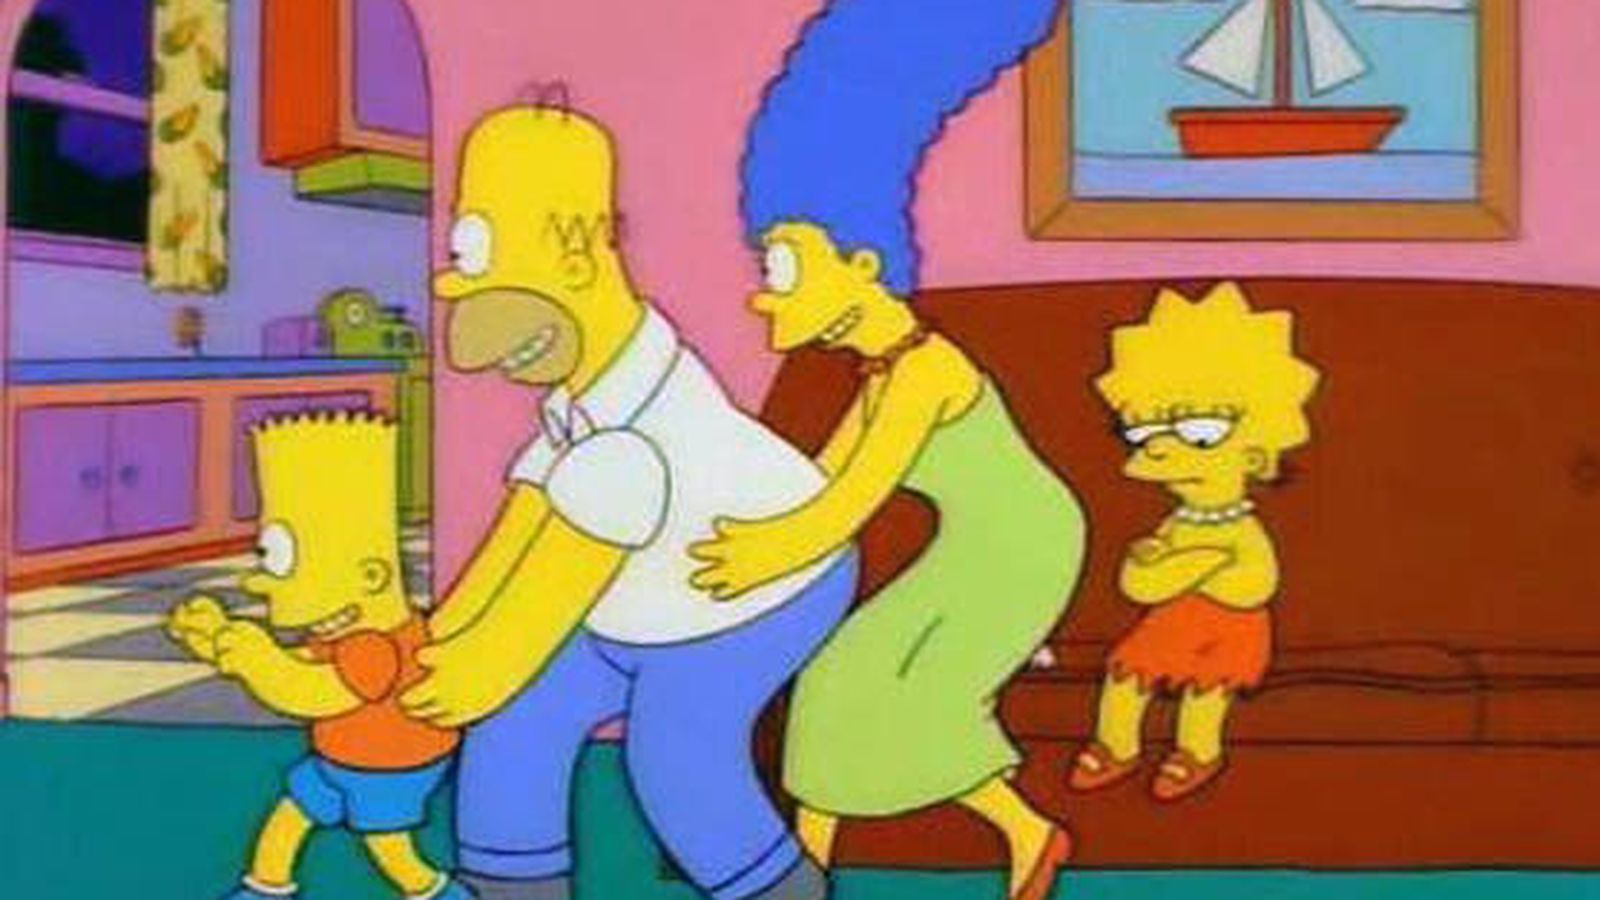 Foto: La familia Simpson cantando a Lisa: "No conquistas nada con una ensalada"